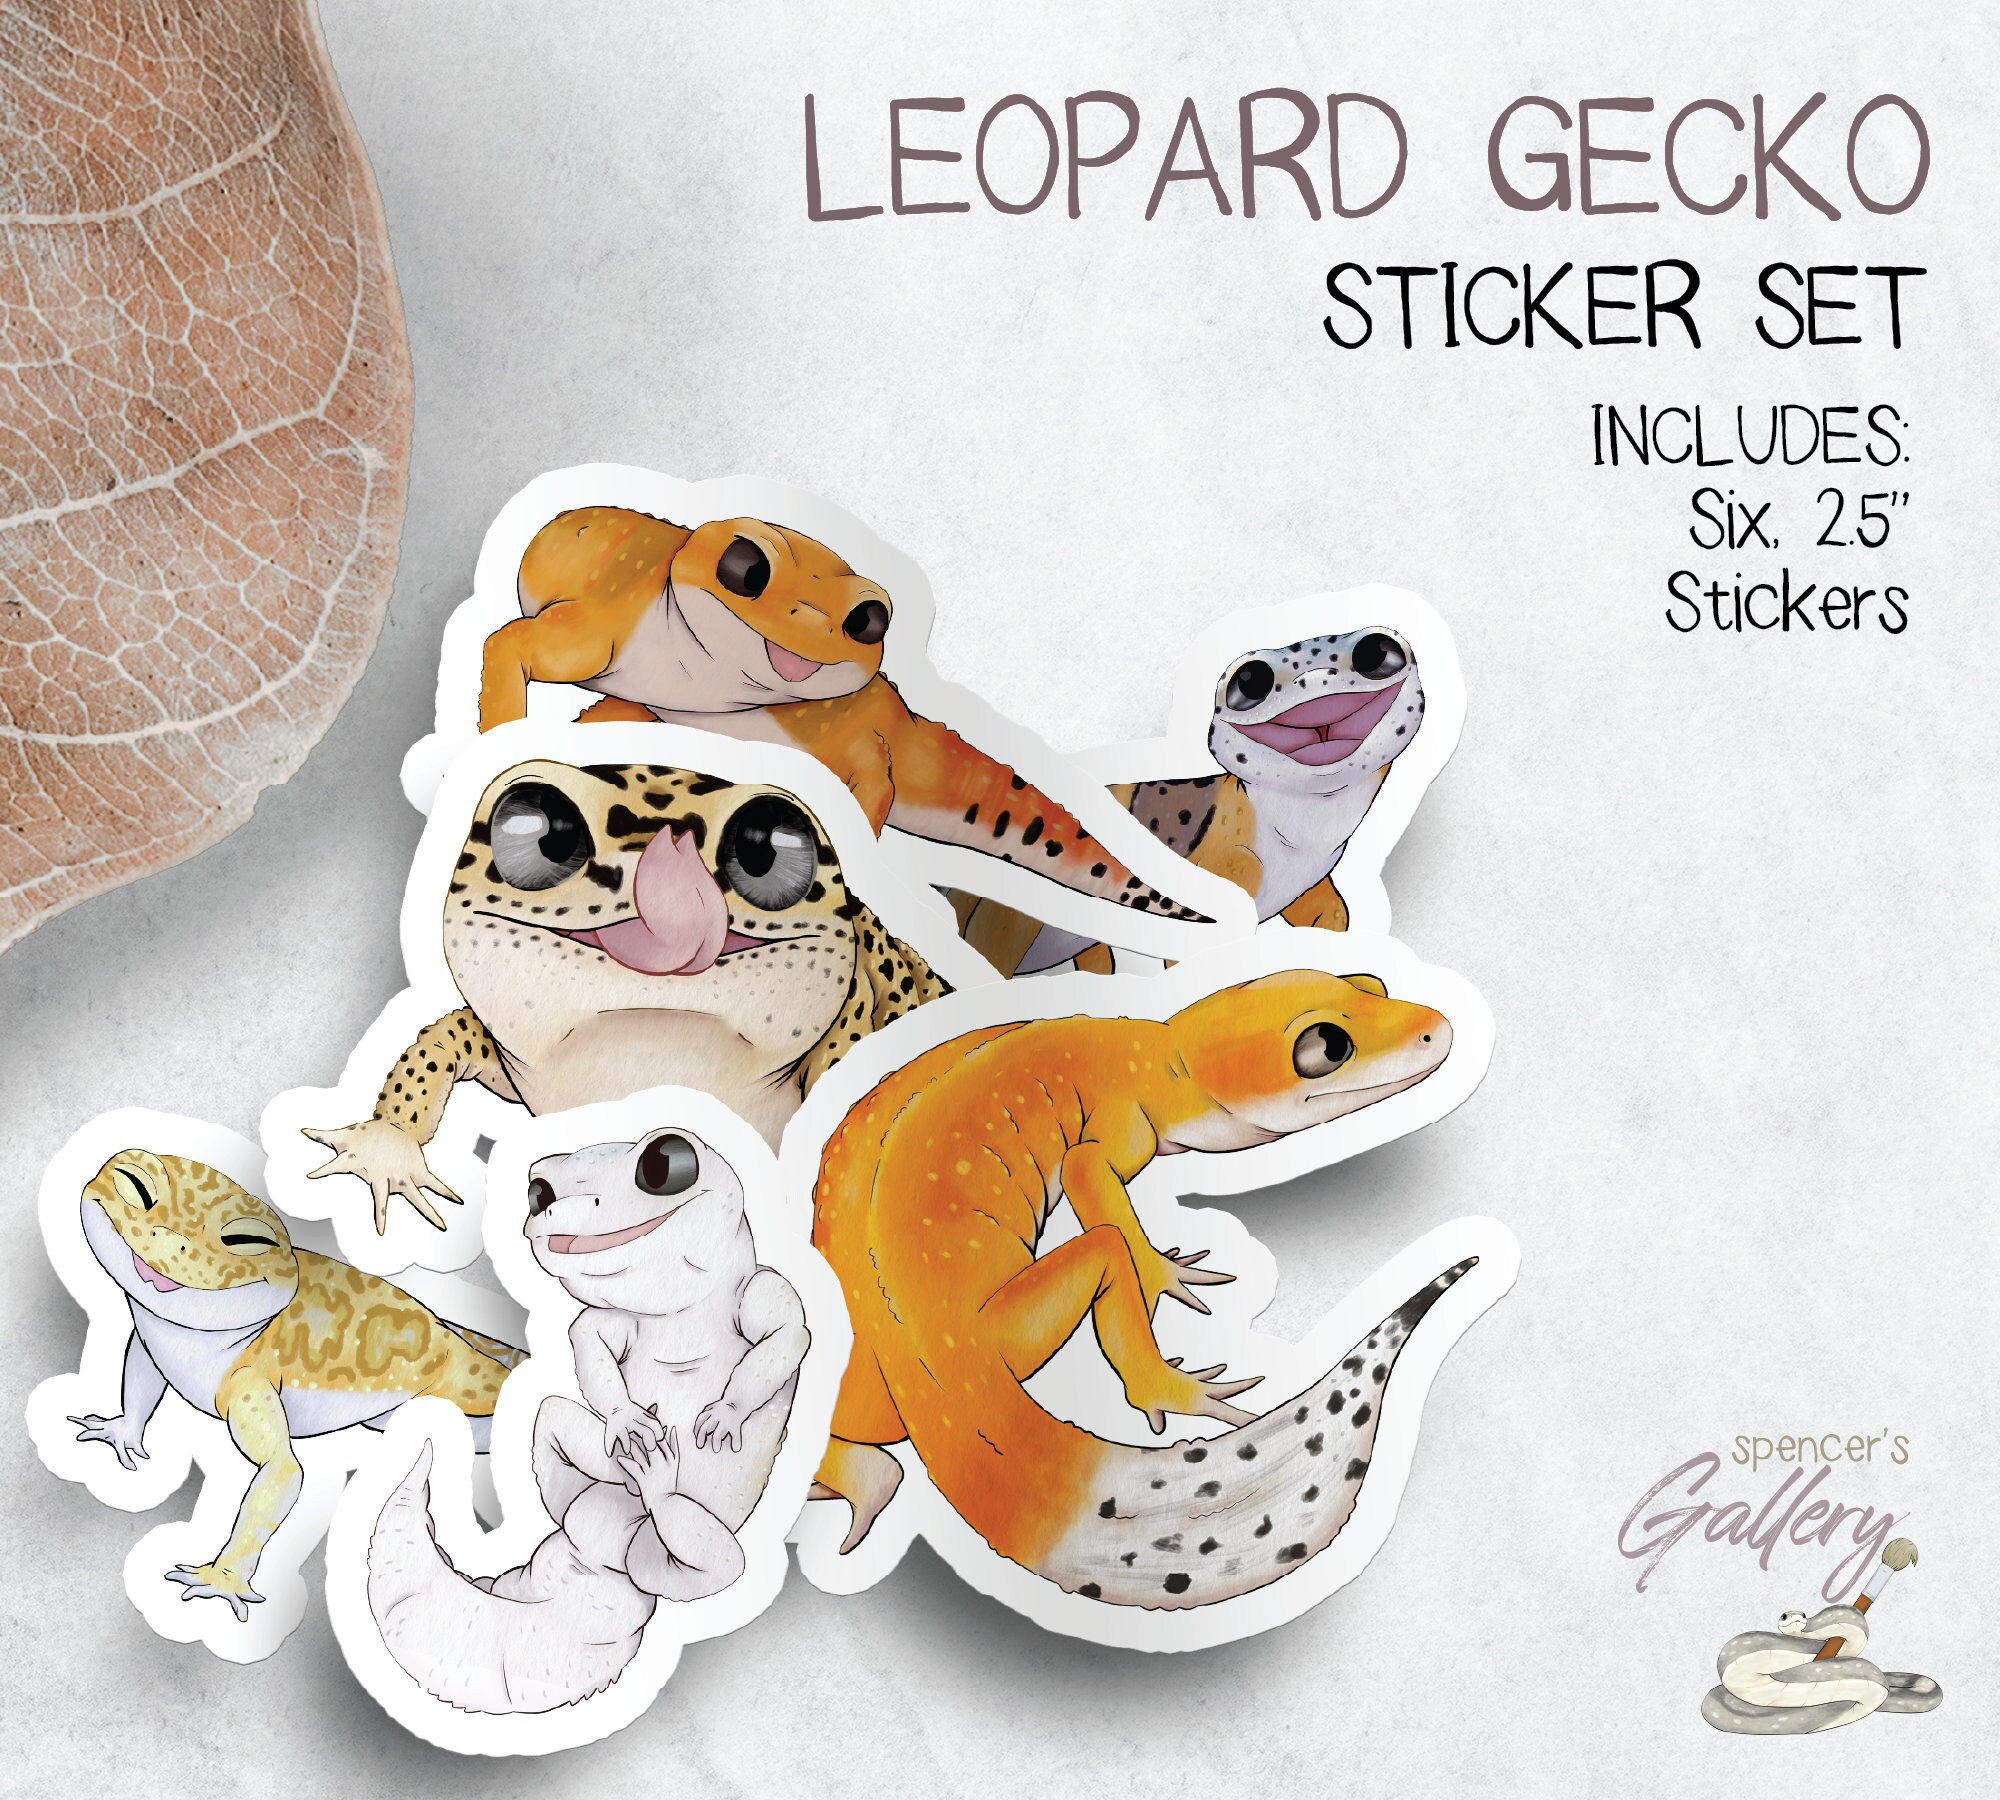 HO HO HO Leopard Animal Print Santa Hat Christmas Envelope Seals Stickers  Sheet of 48 